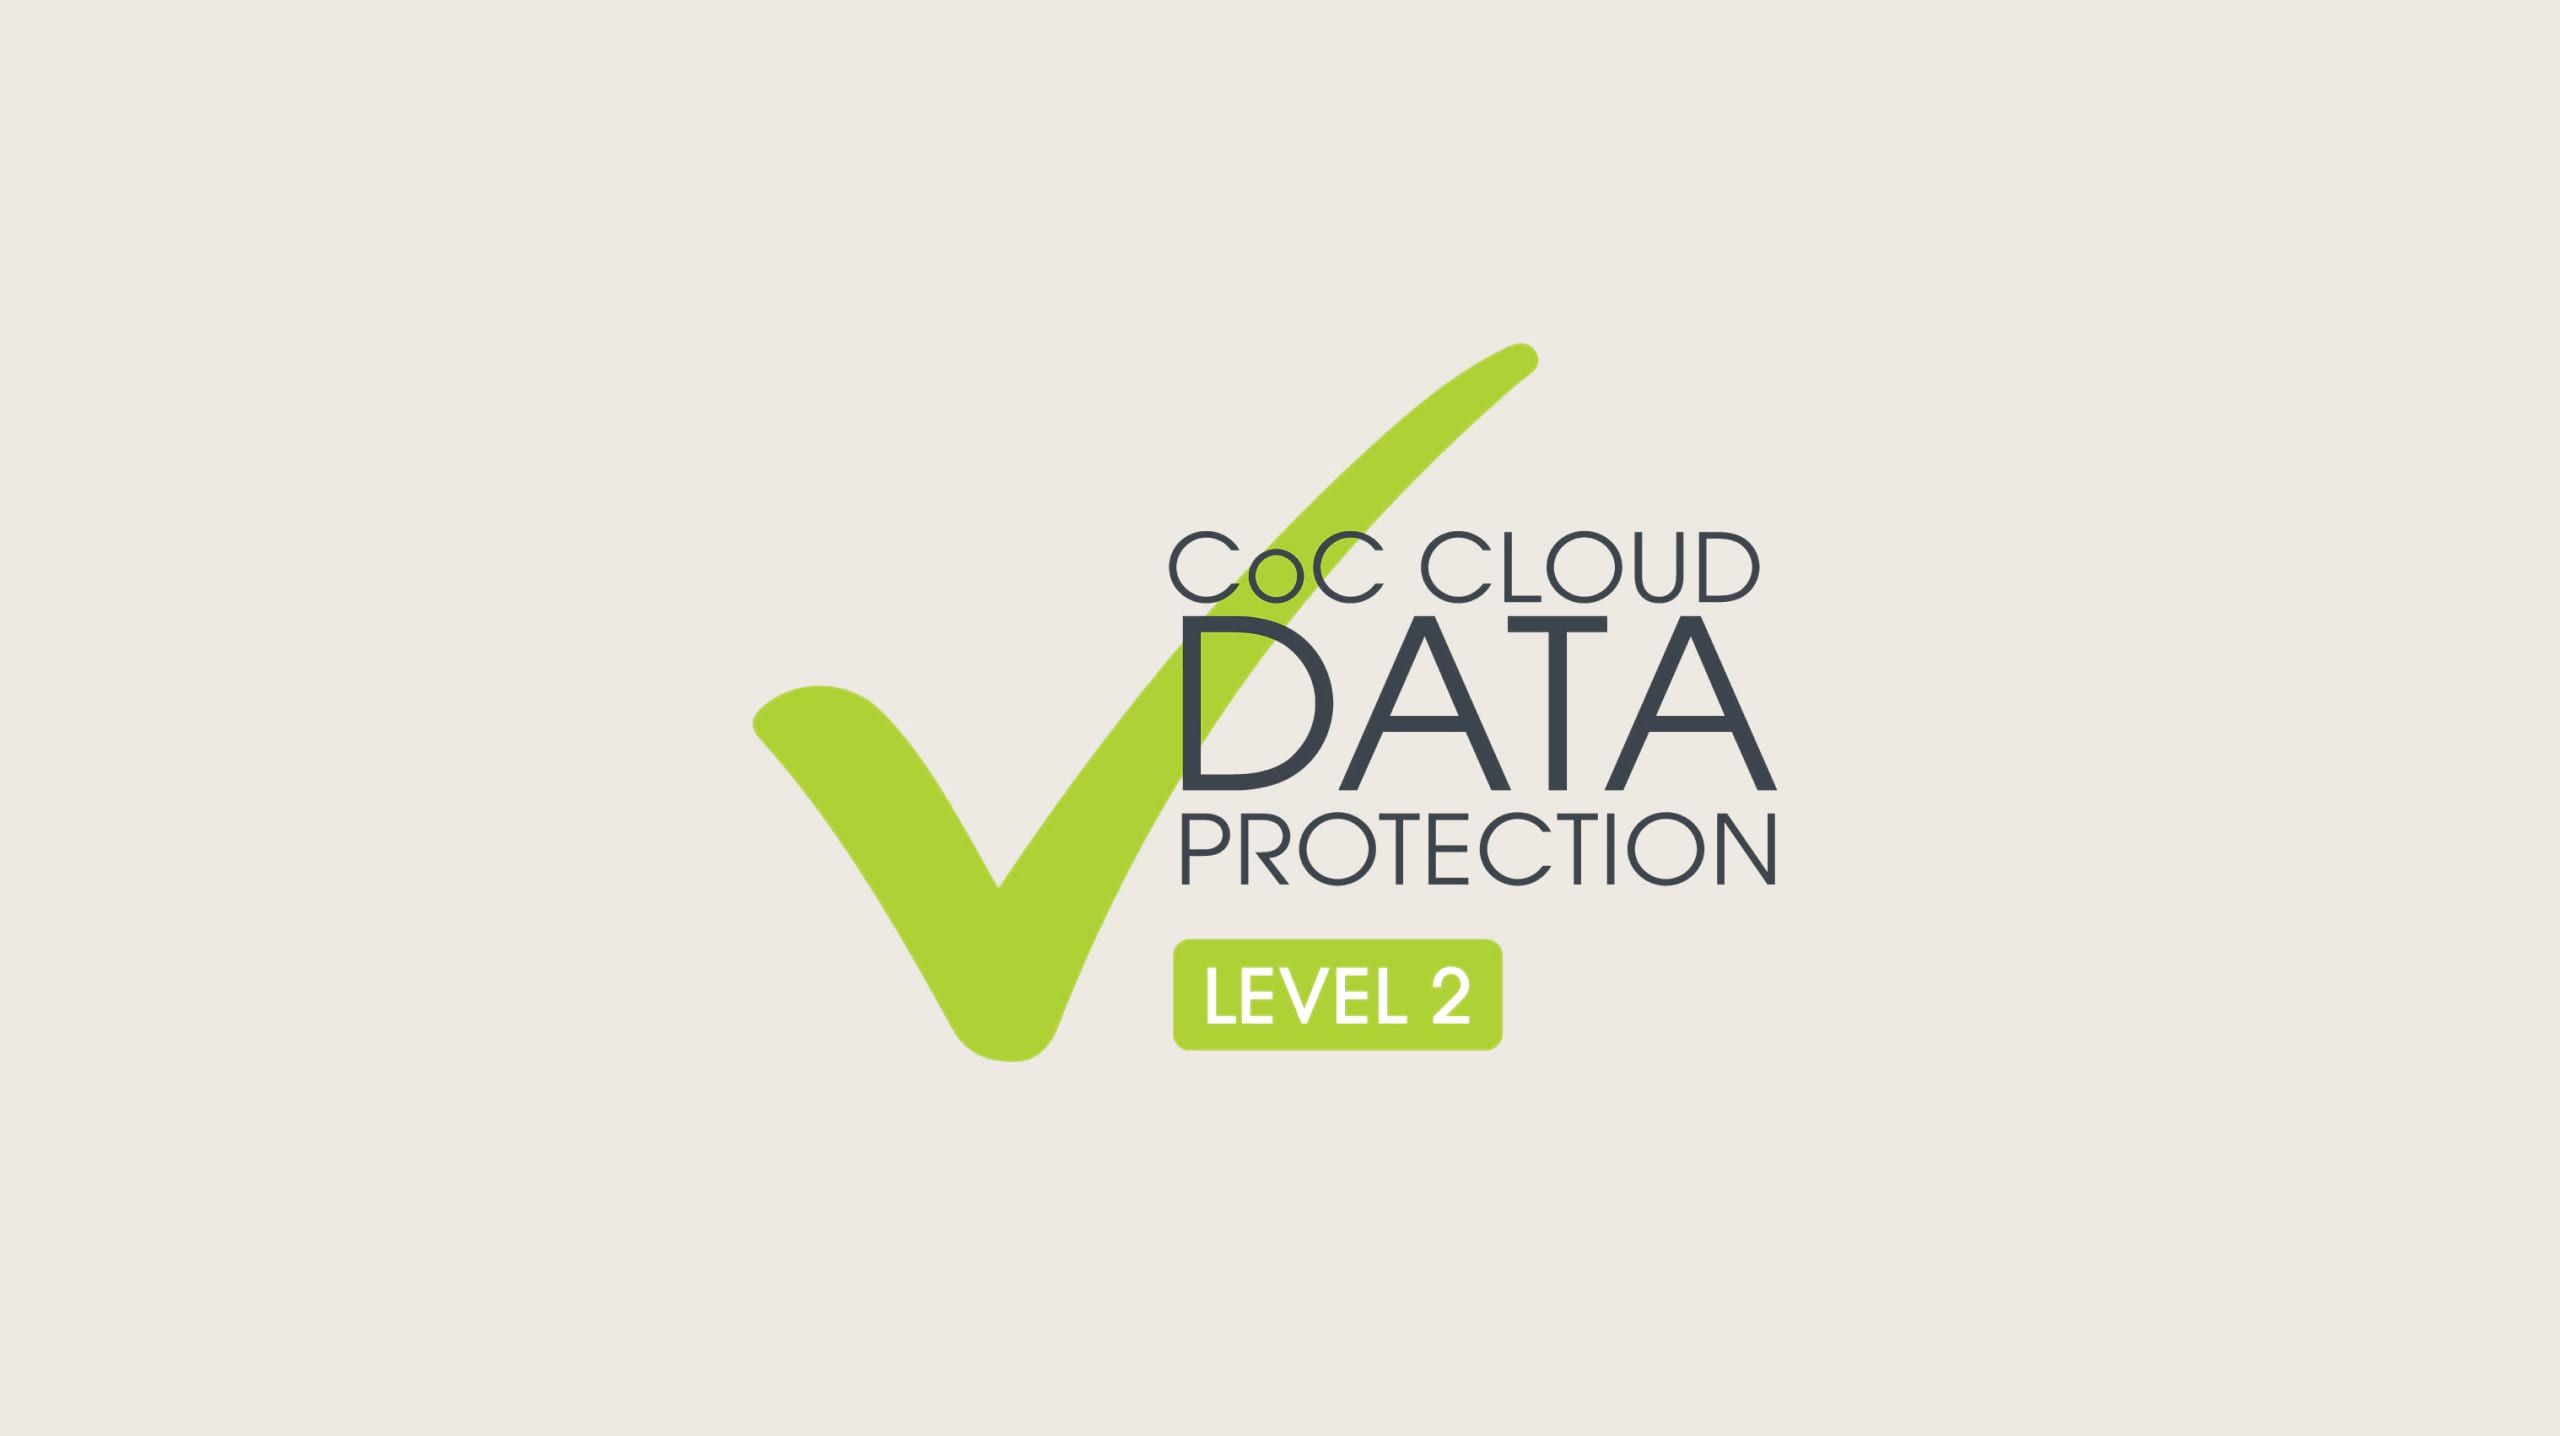 クラウド データ保護行動規範レベル 2 のロゴ